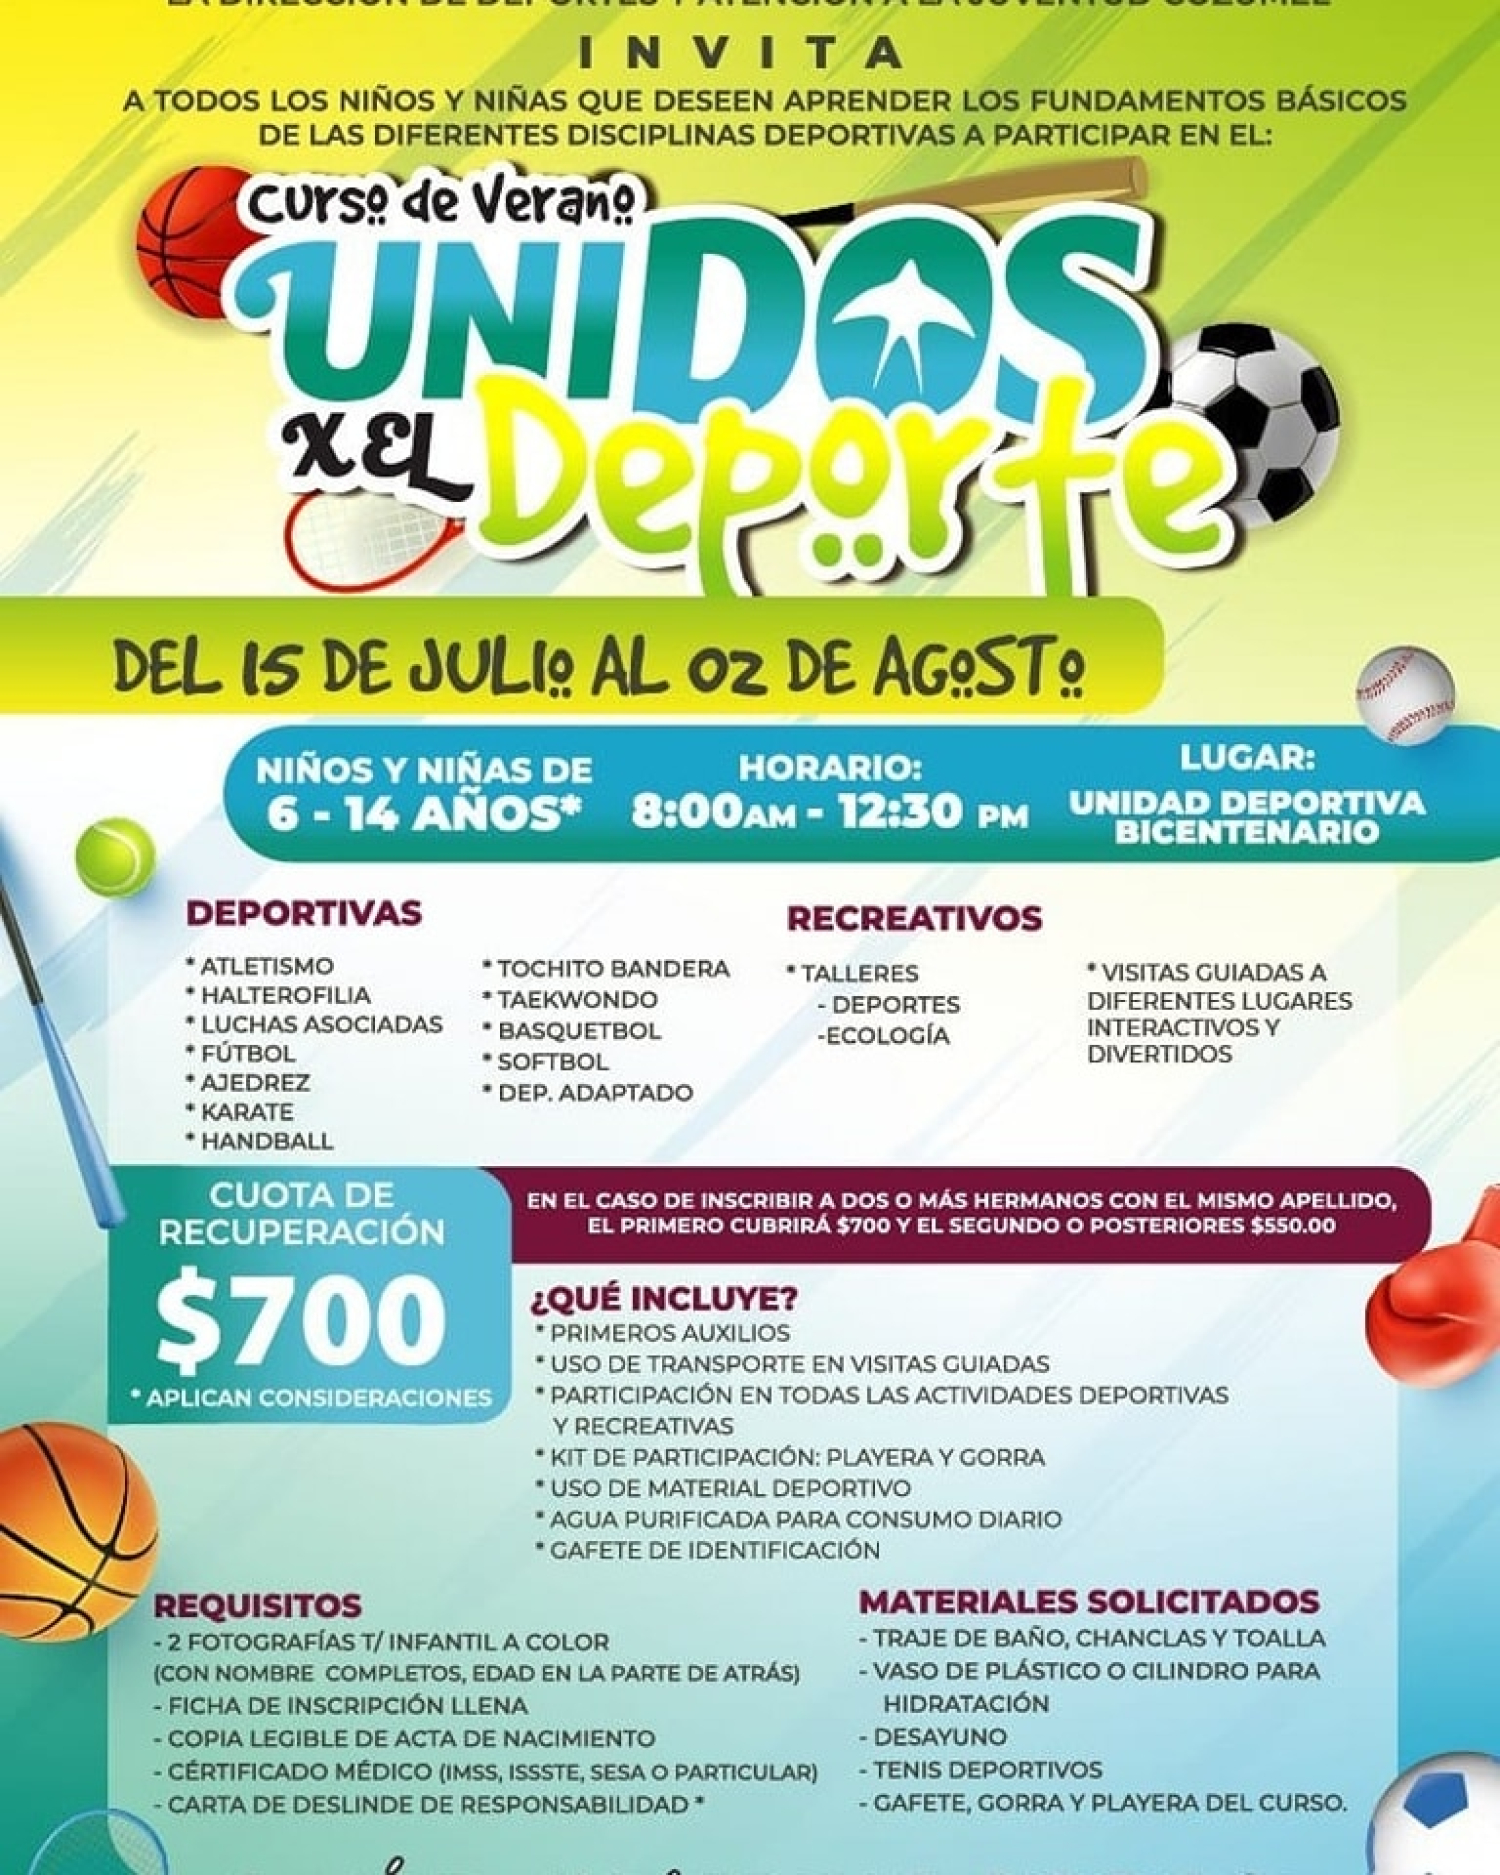 Ya viene el mejor curso de verano de Cozumel: “Unidos por el Deporte”